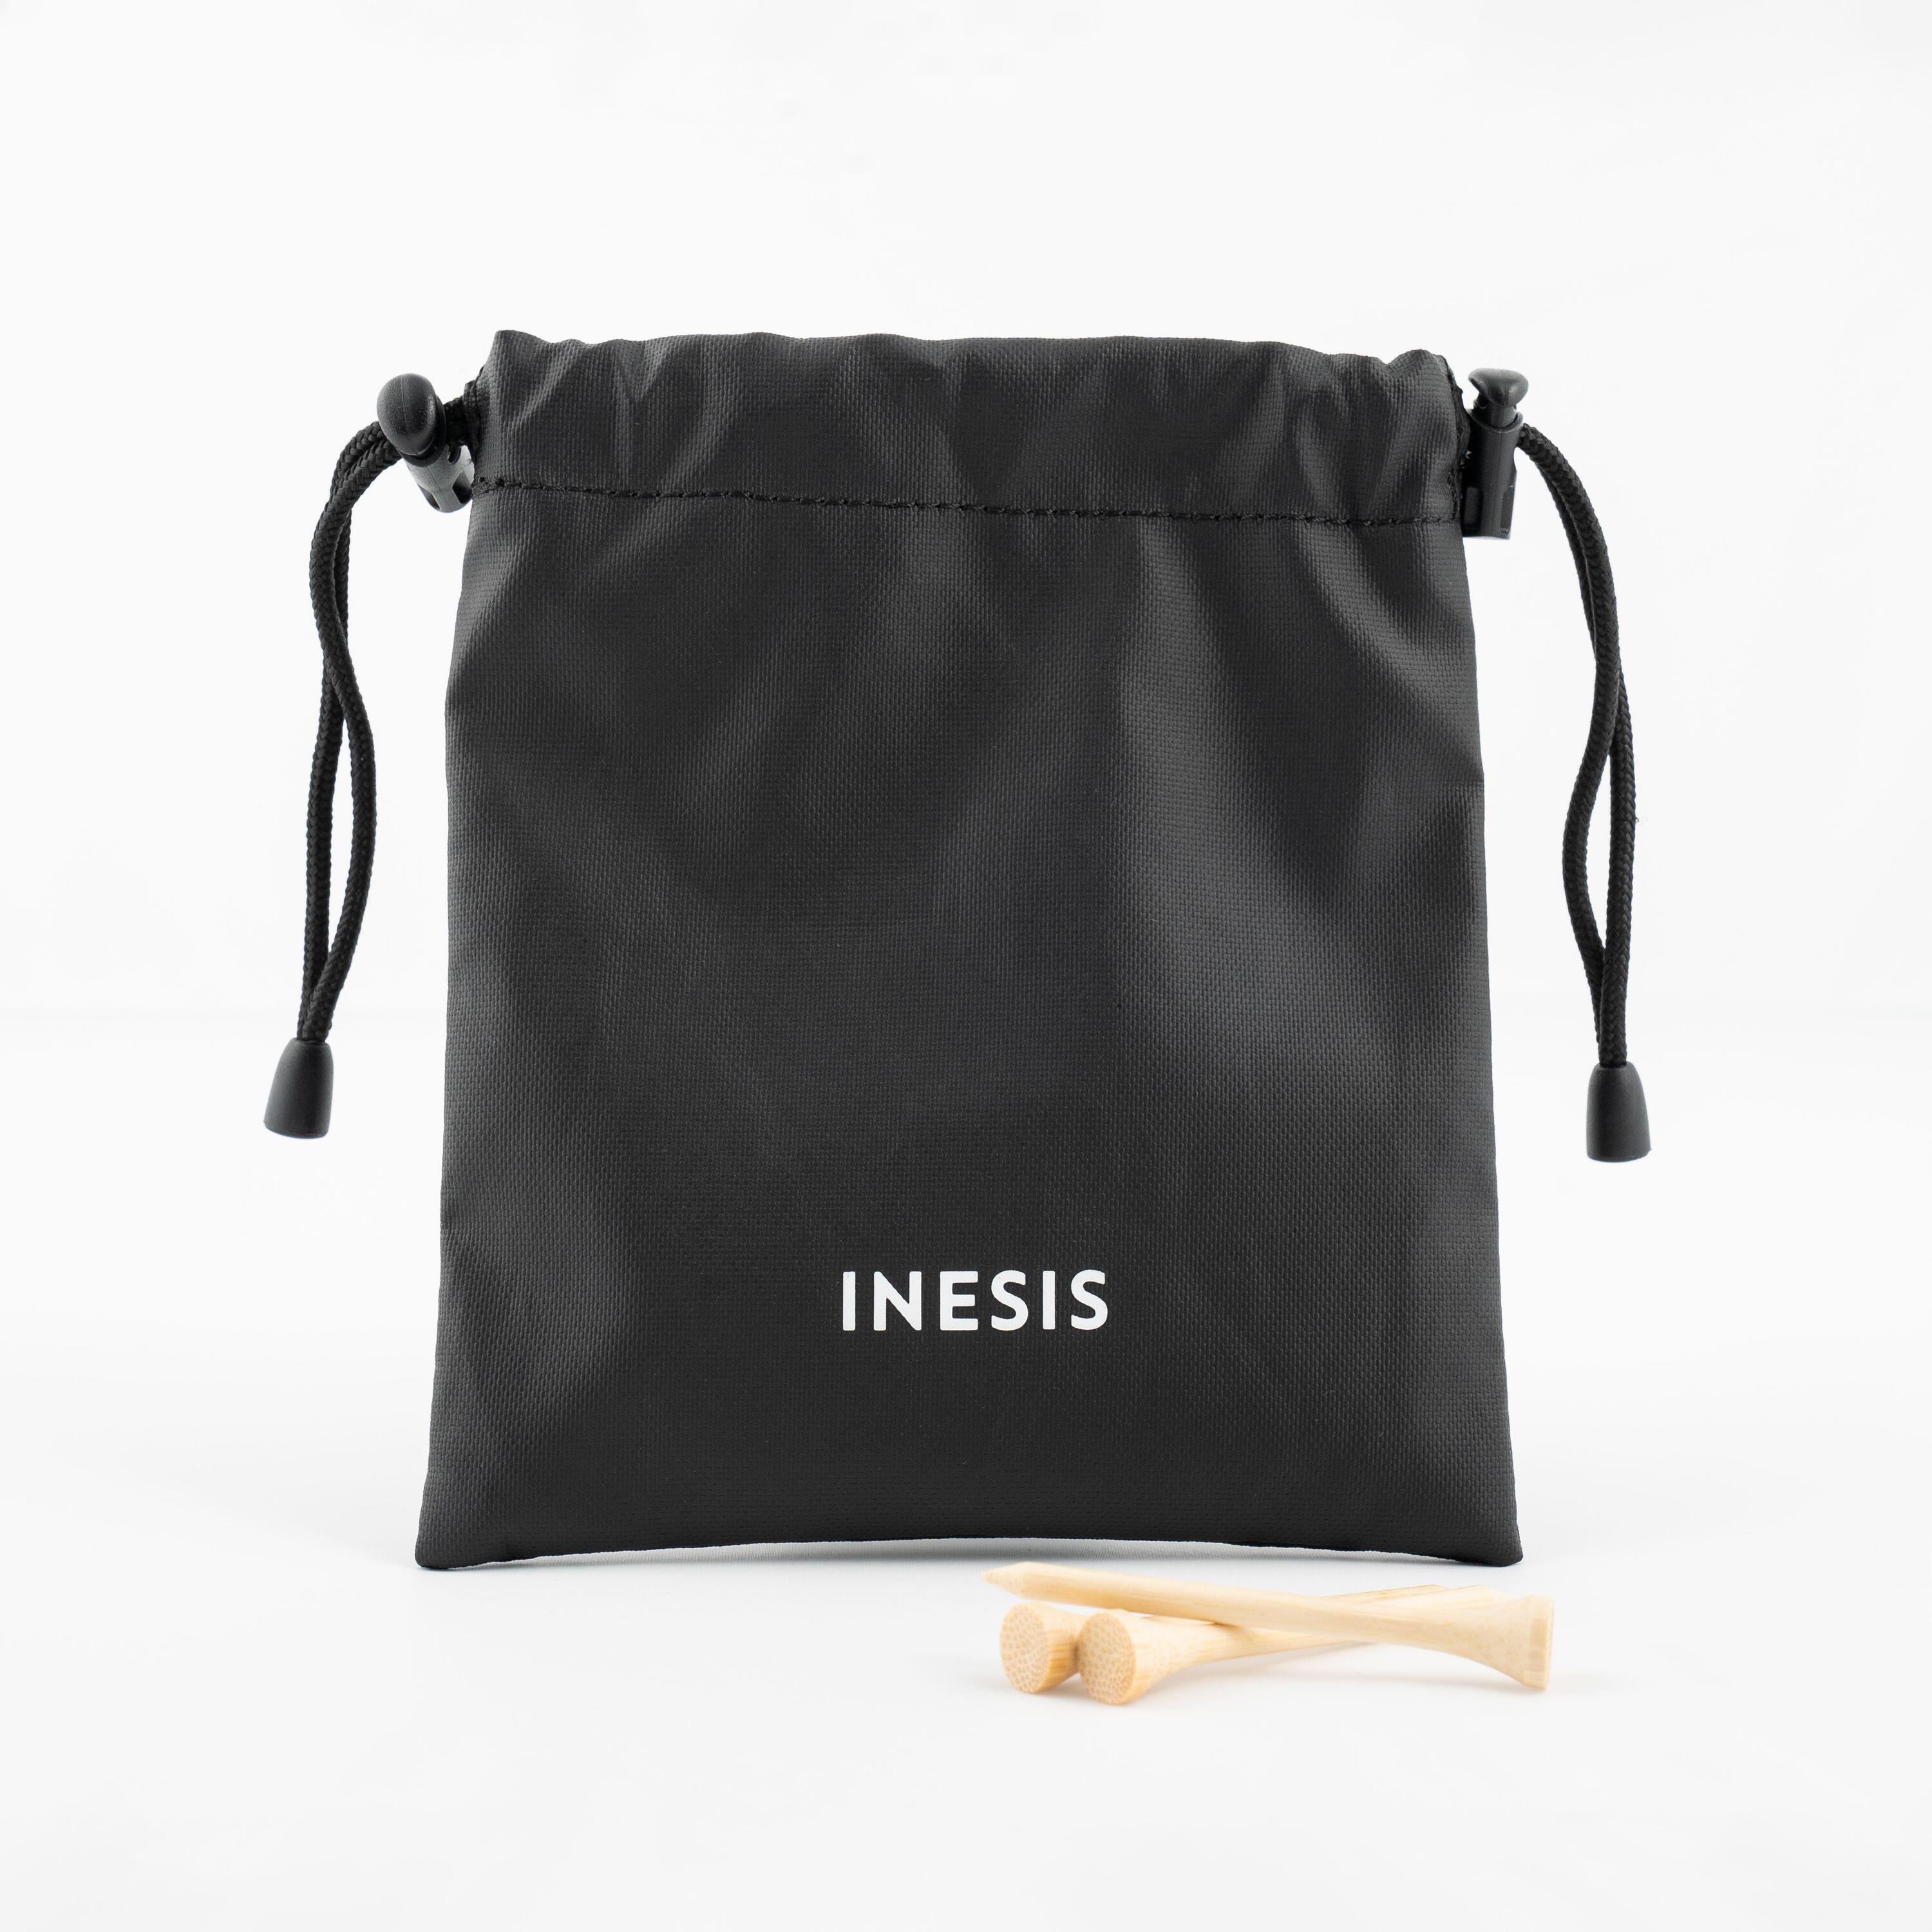 INESIS Golf tee bag - INESIS